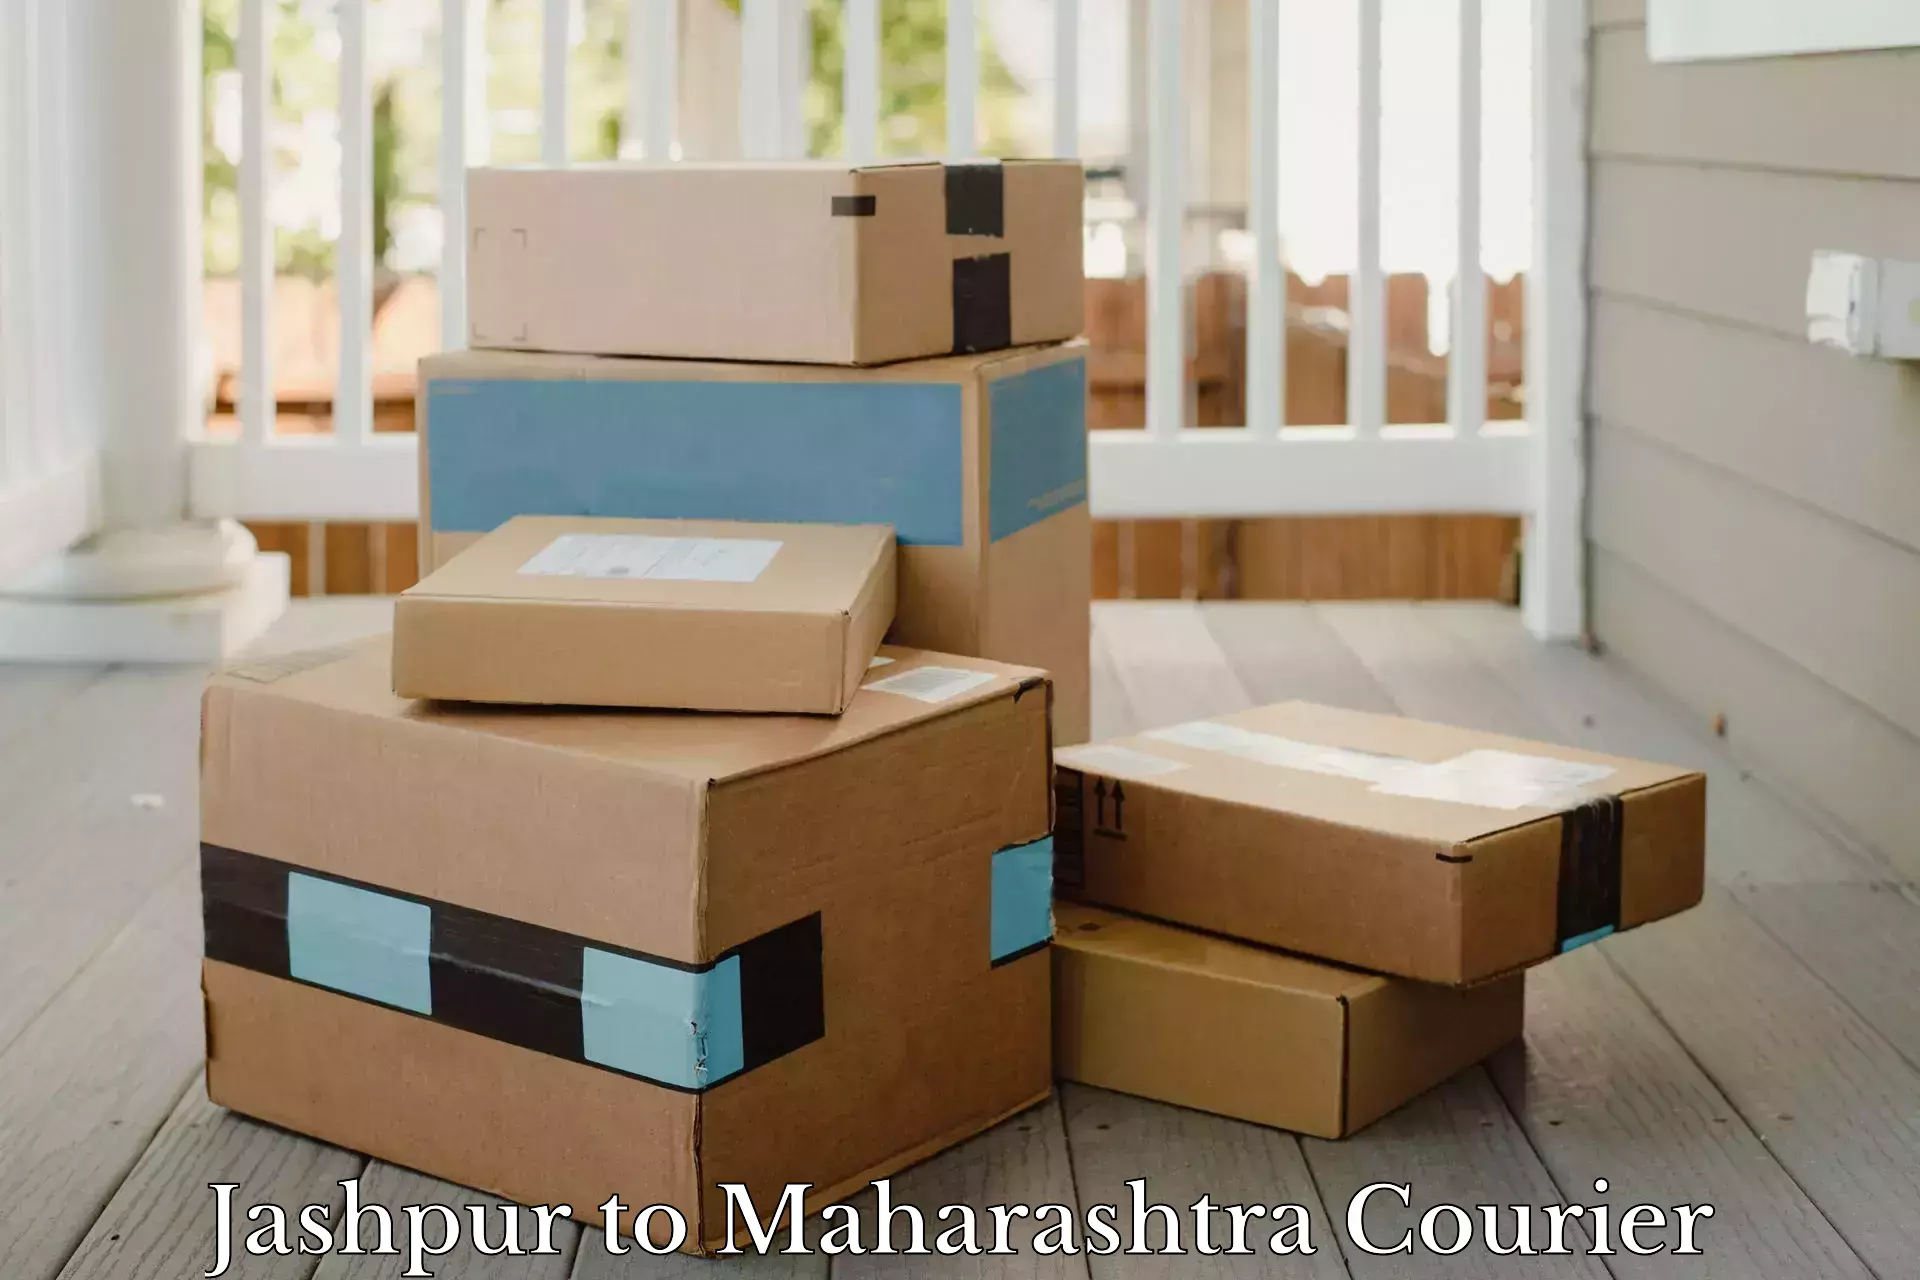 Subscription-based courier Jashpur to Mahabaleshwar